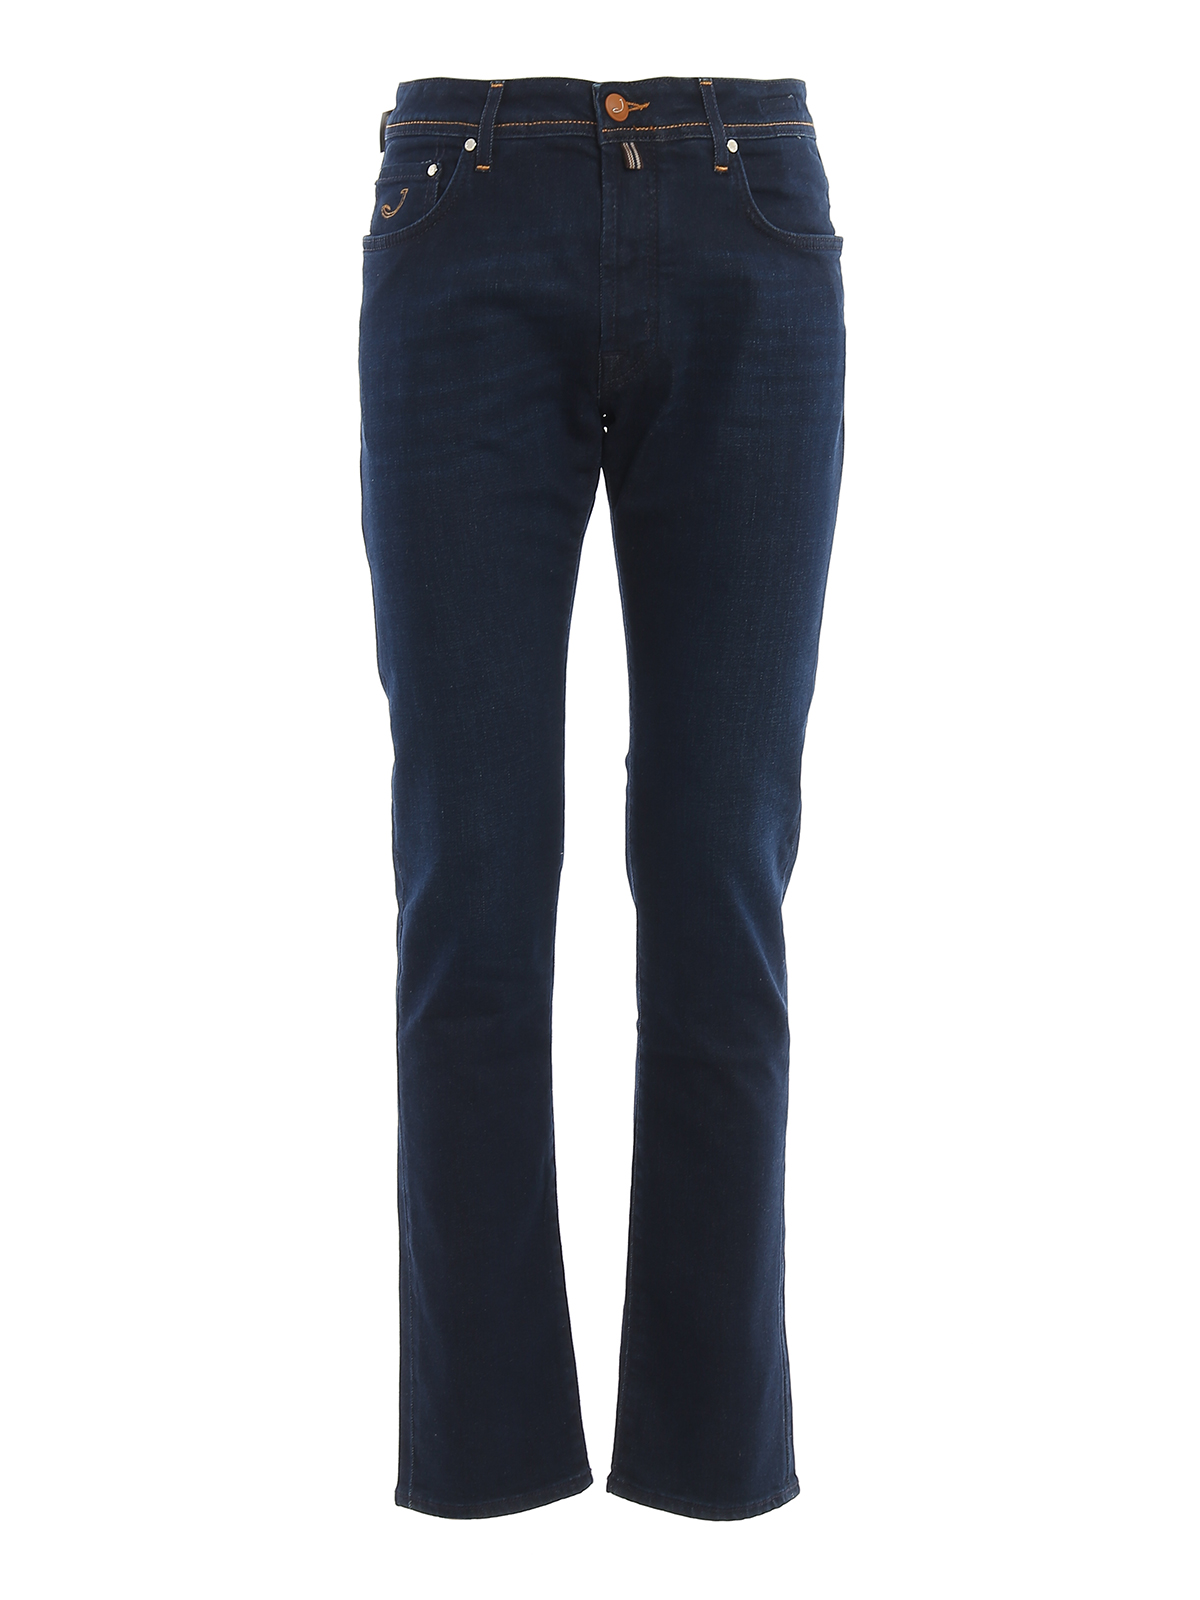 Straight leg jeans Jacob Cohen - Style 688 cotton blue jeans ...